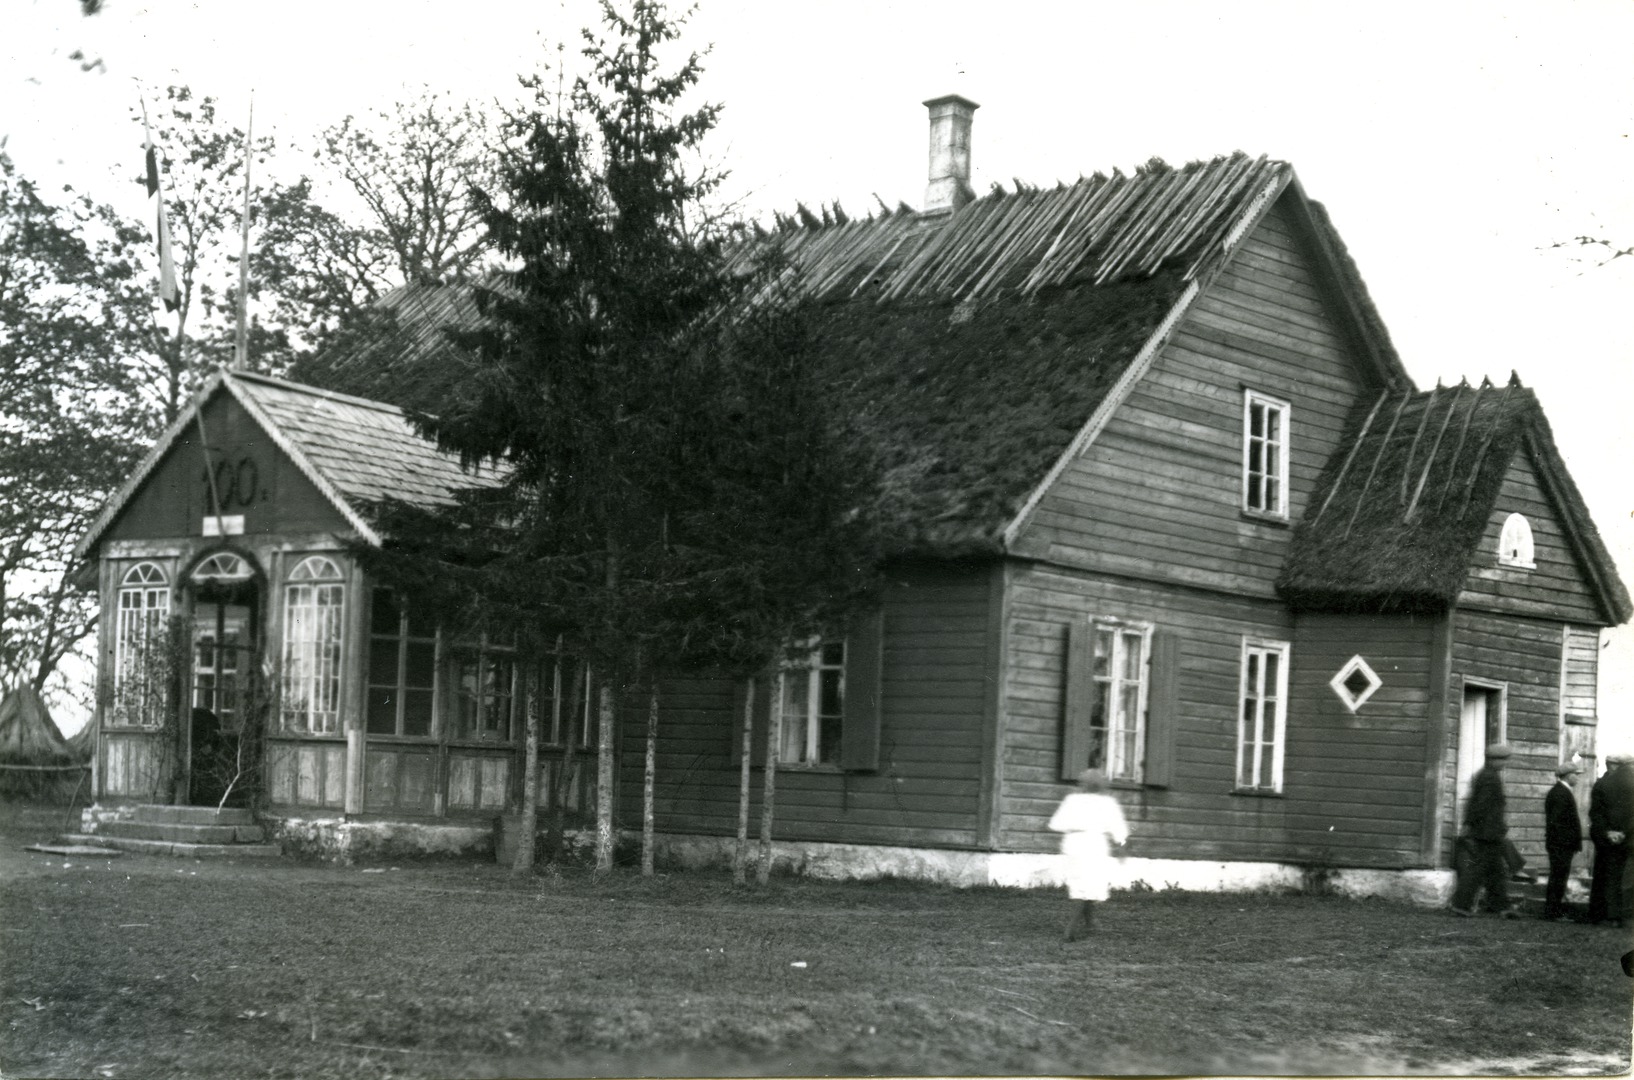 Armuadra School House of Saaremaa Karja County (built in 1895)